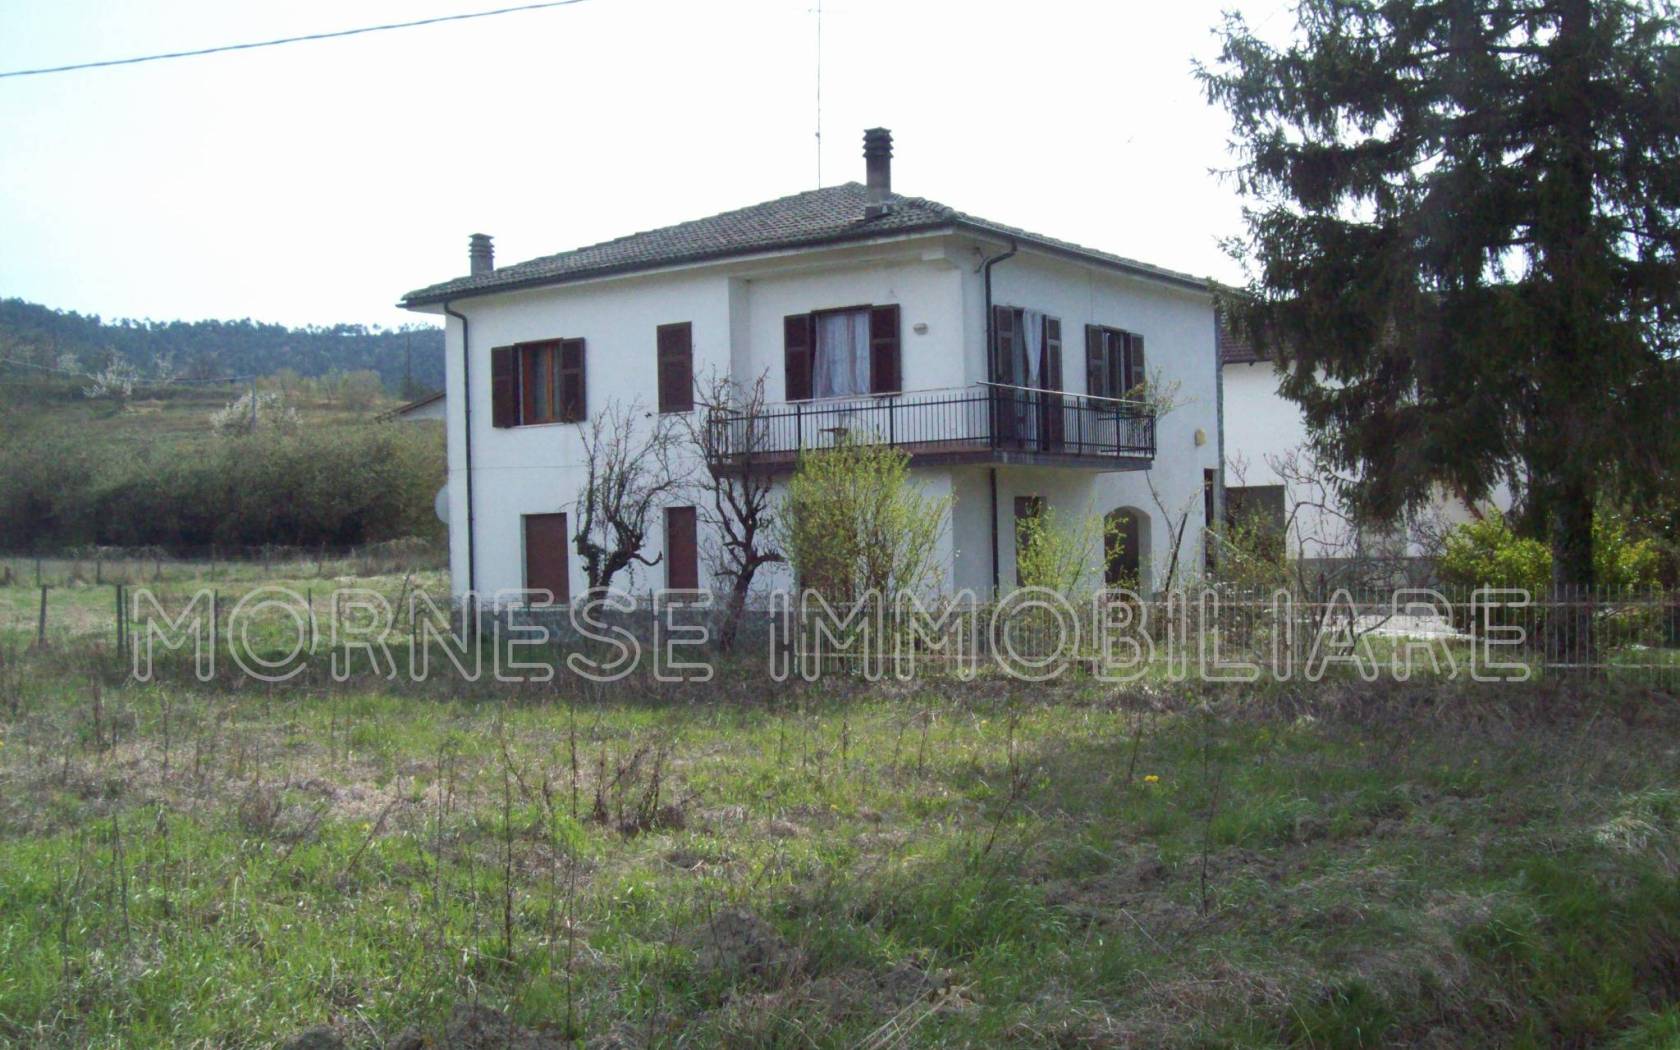 Villa unifamiliare Località Boffiti, Casaleggio Boiro